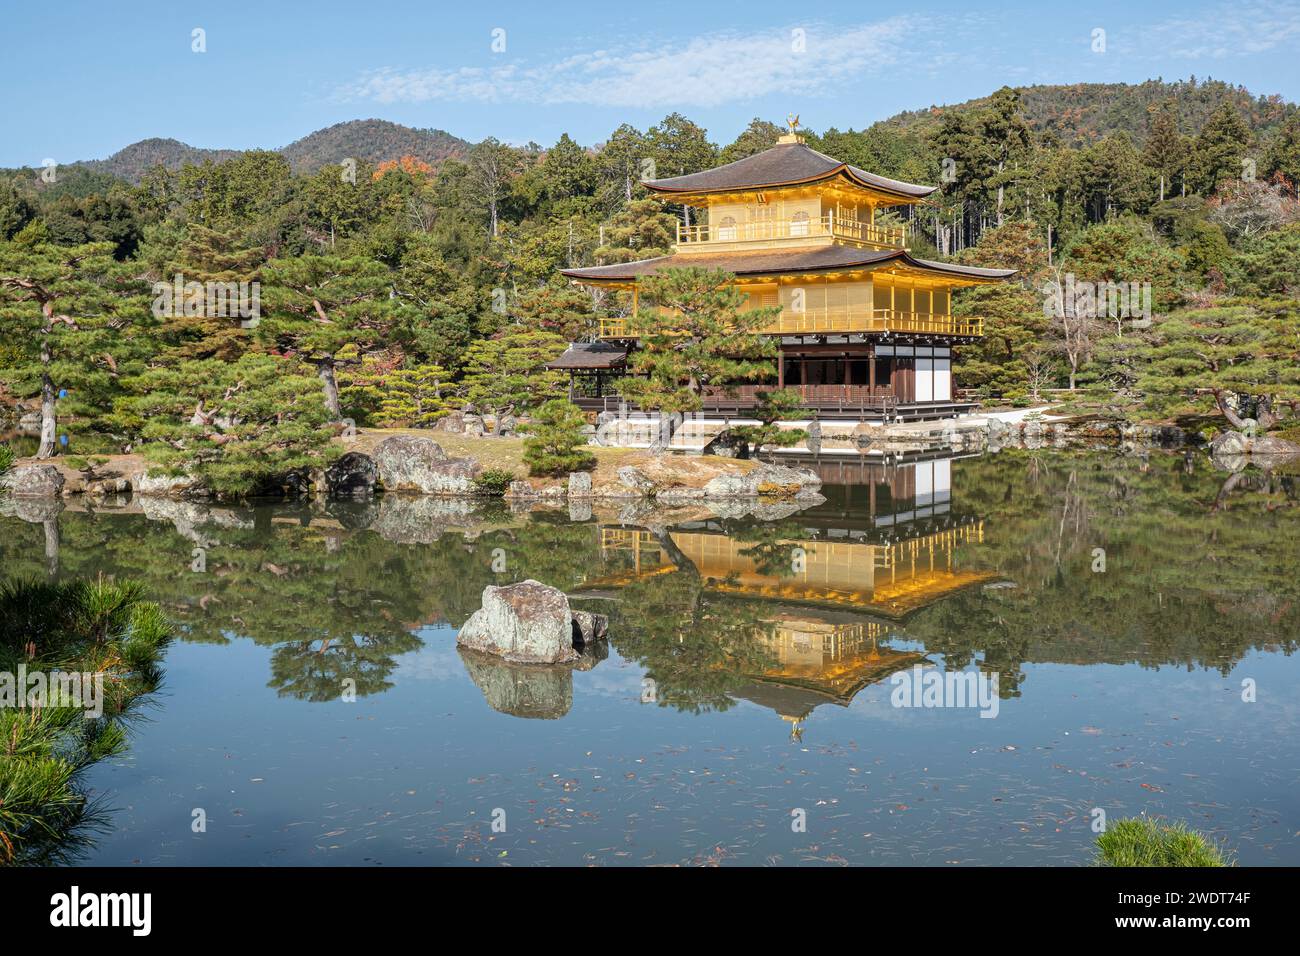 Tempio del padiglione dorato Kinkaku-ji riflesso in uno stagno in autunno, sito patrimonio dell'umanità dell'UNESCO, Kyoto, Honshu, Giappone, Asia Foto Stock